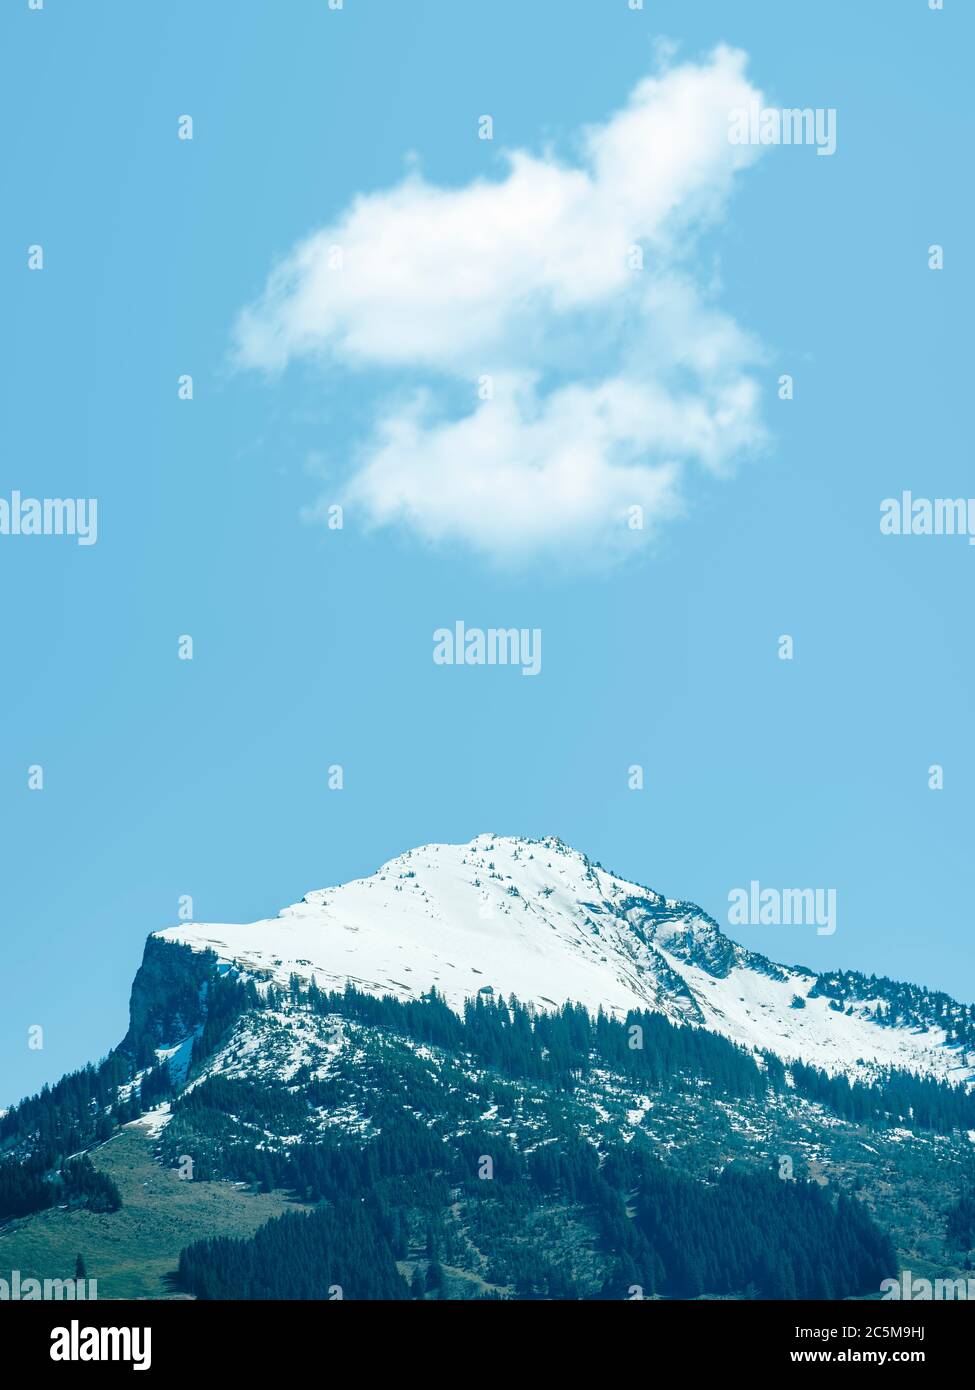 Schneebedeckter Berggipfel in den Schweizer Alpen im Sommer. Vertikale Aufnahme mit einem einzigen Berggipfel. Schweiz Alpen in der Nähe der Stadt Quarten im Kanton Stockfoto